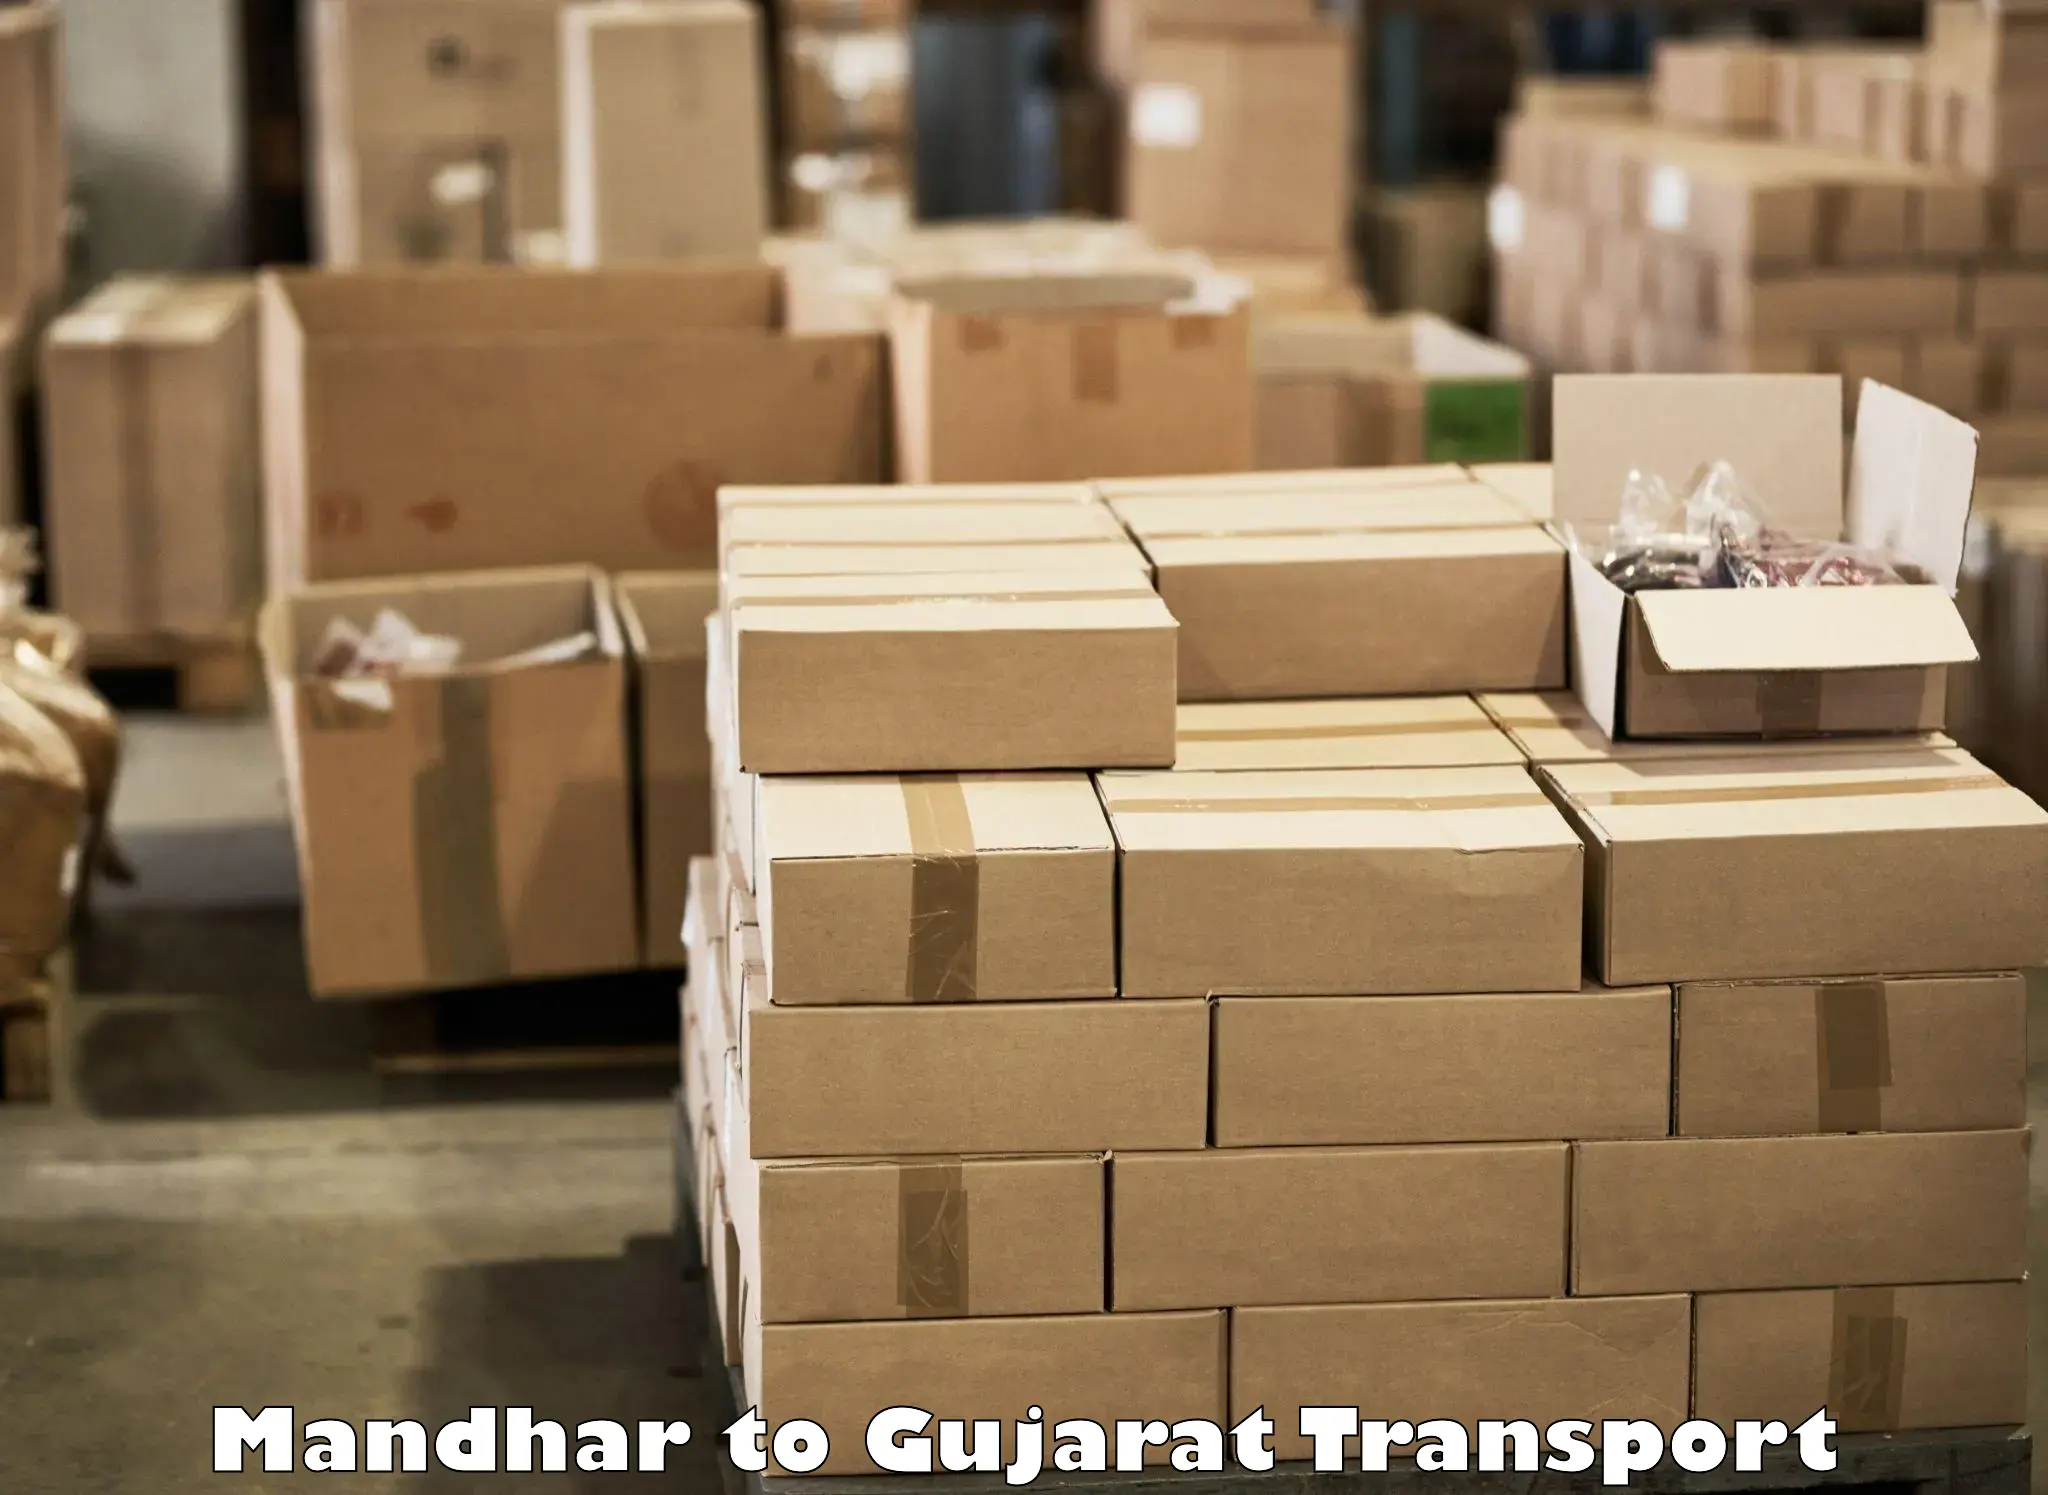 Parcel transport services Mandhar to Dholka